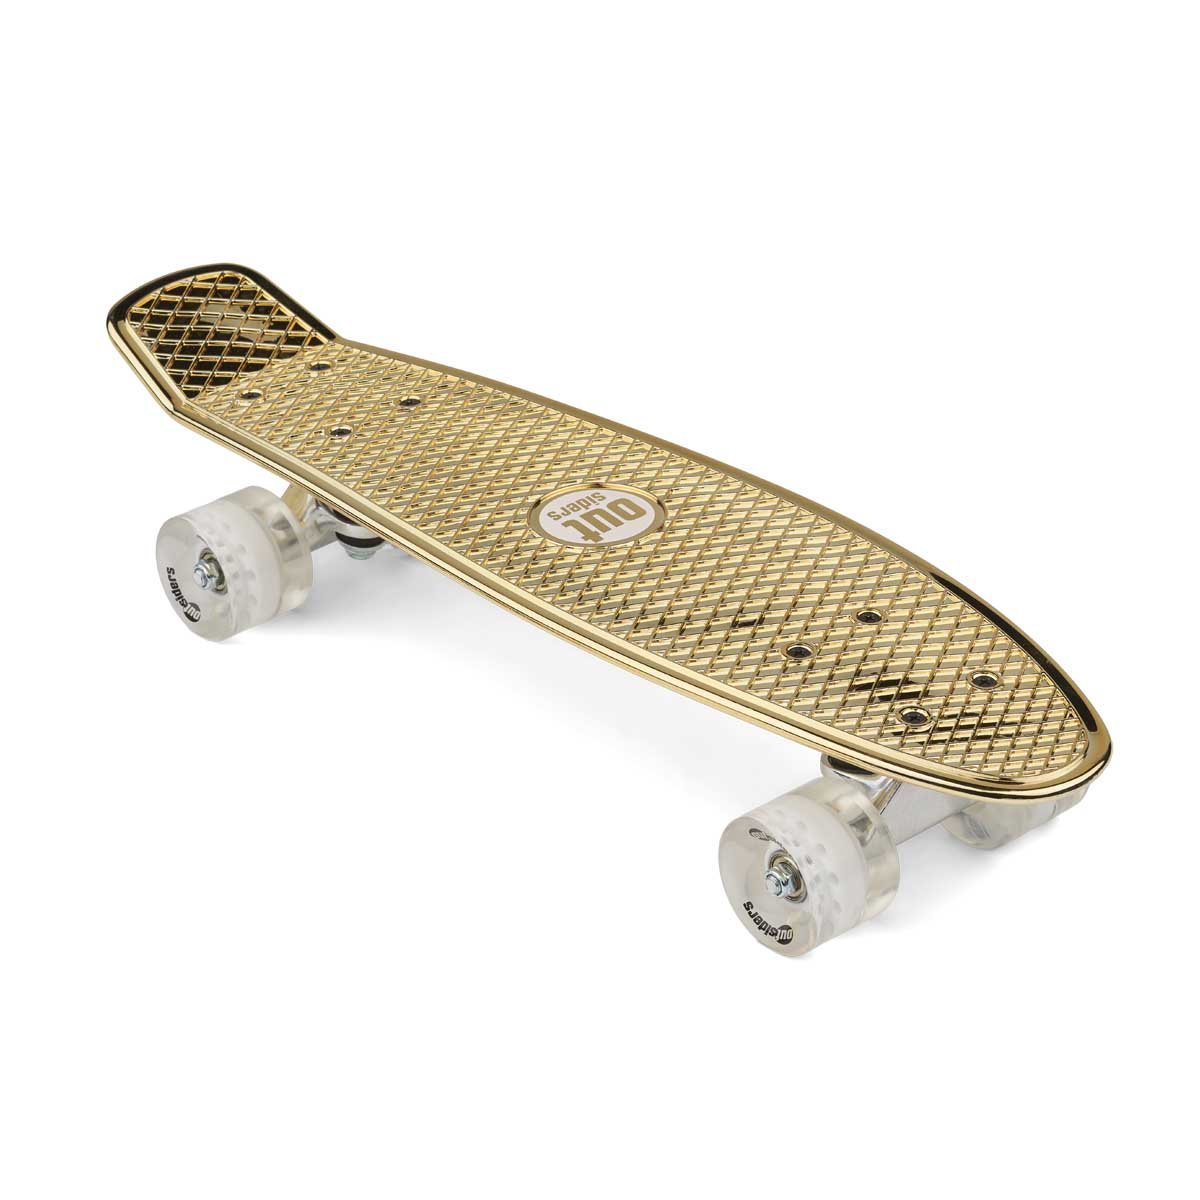 Outsiders - Chrome Edition Retro Skateboard Gold - Leker